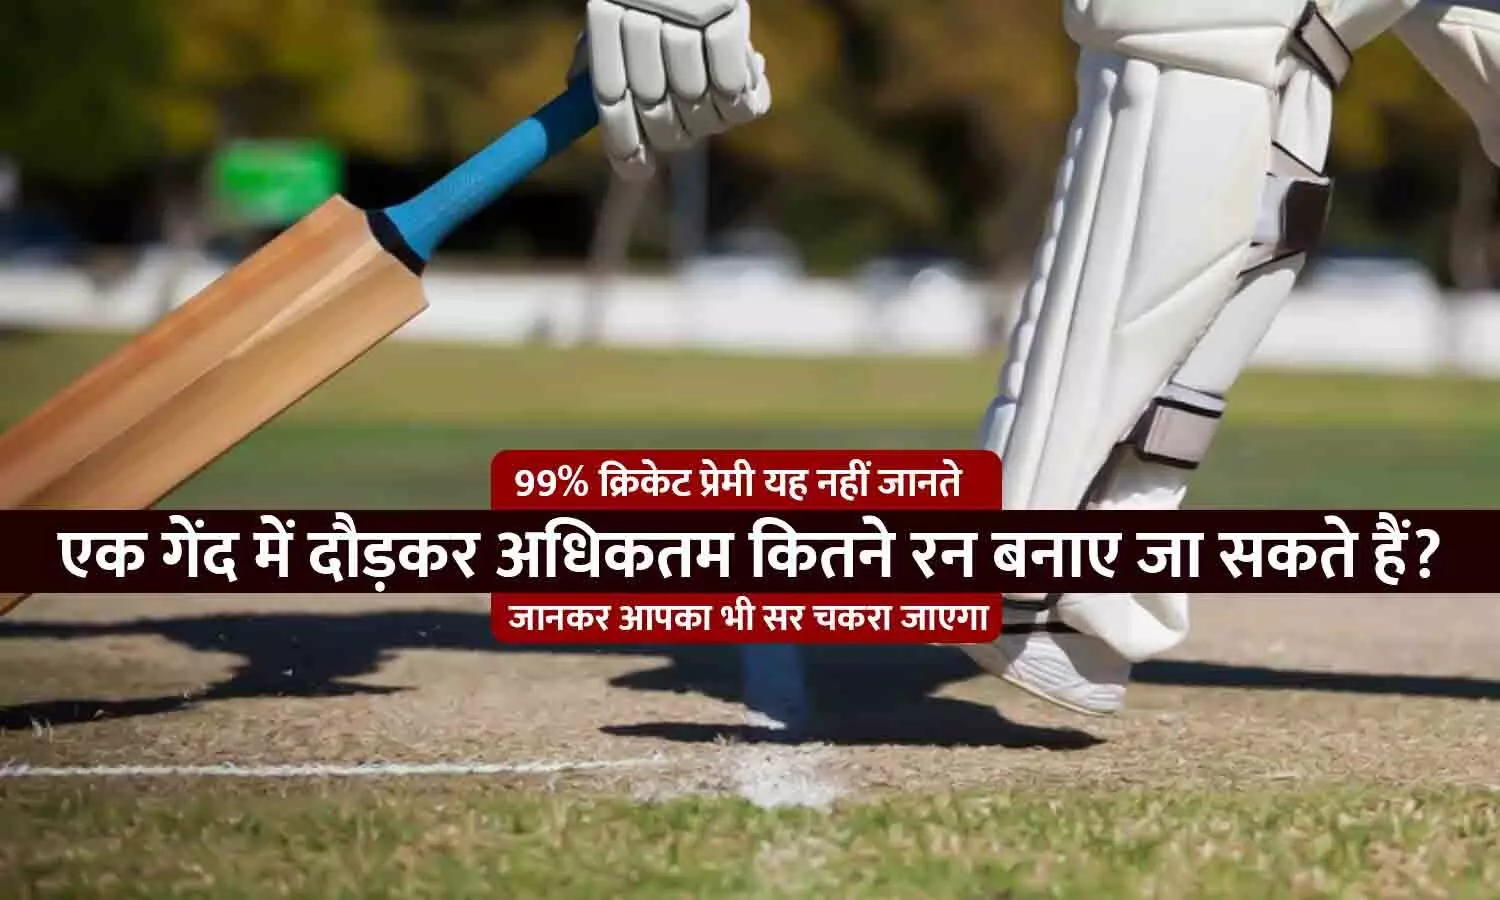 Cricket Rules: एक गेंद में दौड़ के अधिकतम कितने रन बनाए जा सकते हैं, 99 फीसद लोग यह नहीं जानते होंगे...